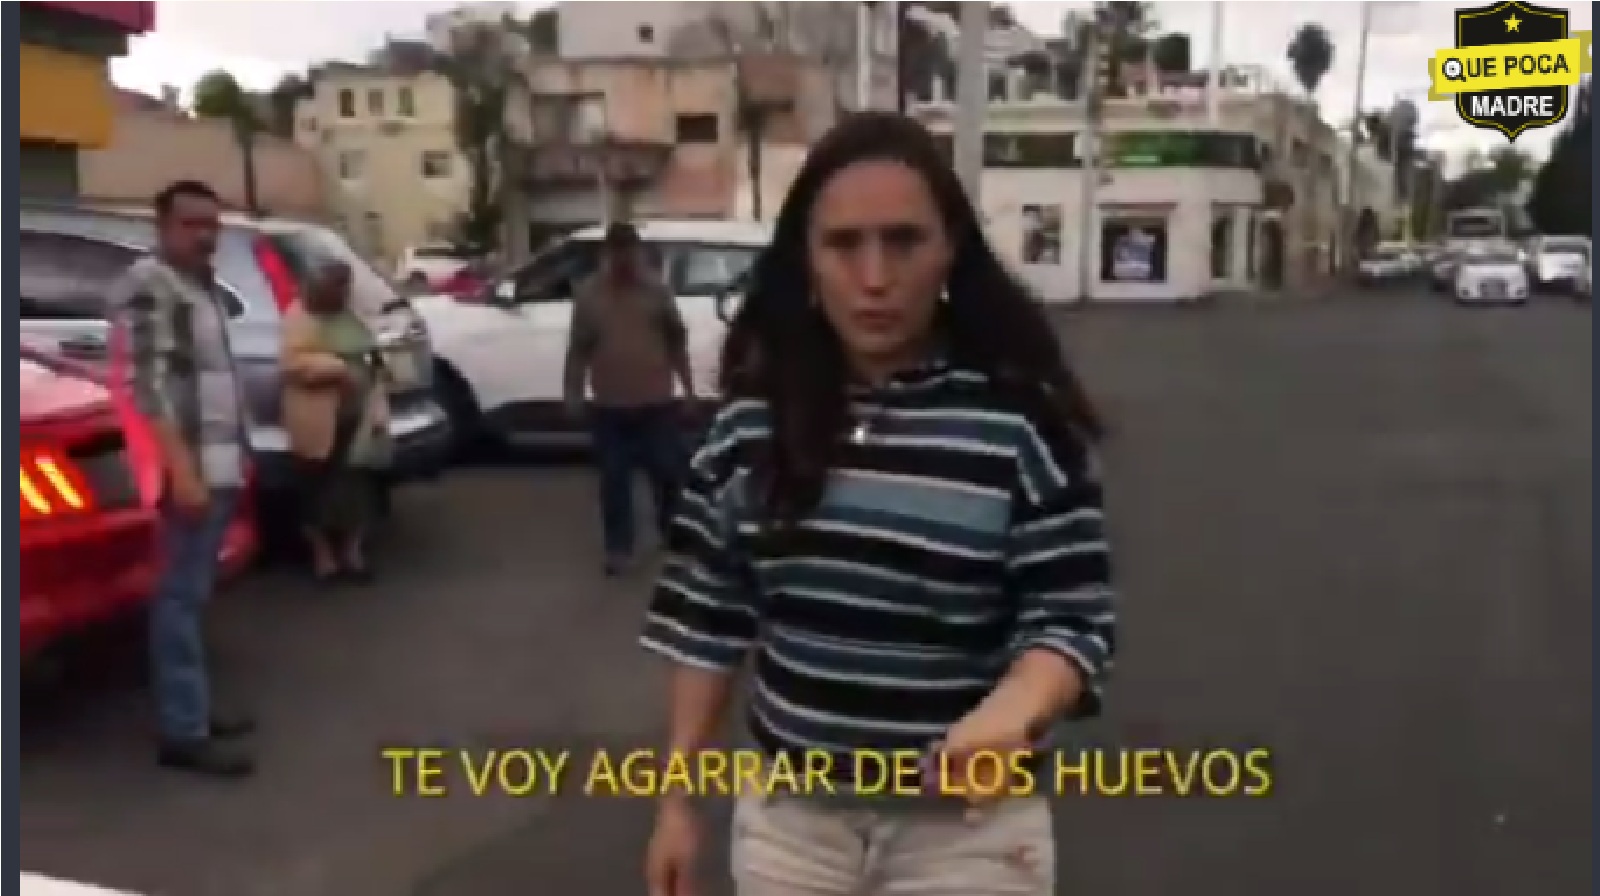 Video: #Ladymanoseo La mujer del video “castigó” a sus hijos (3 y 6 años aprox.) dejándolos afuera de un Oxxo, solos.